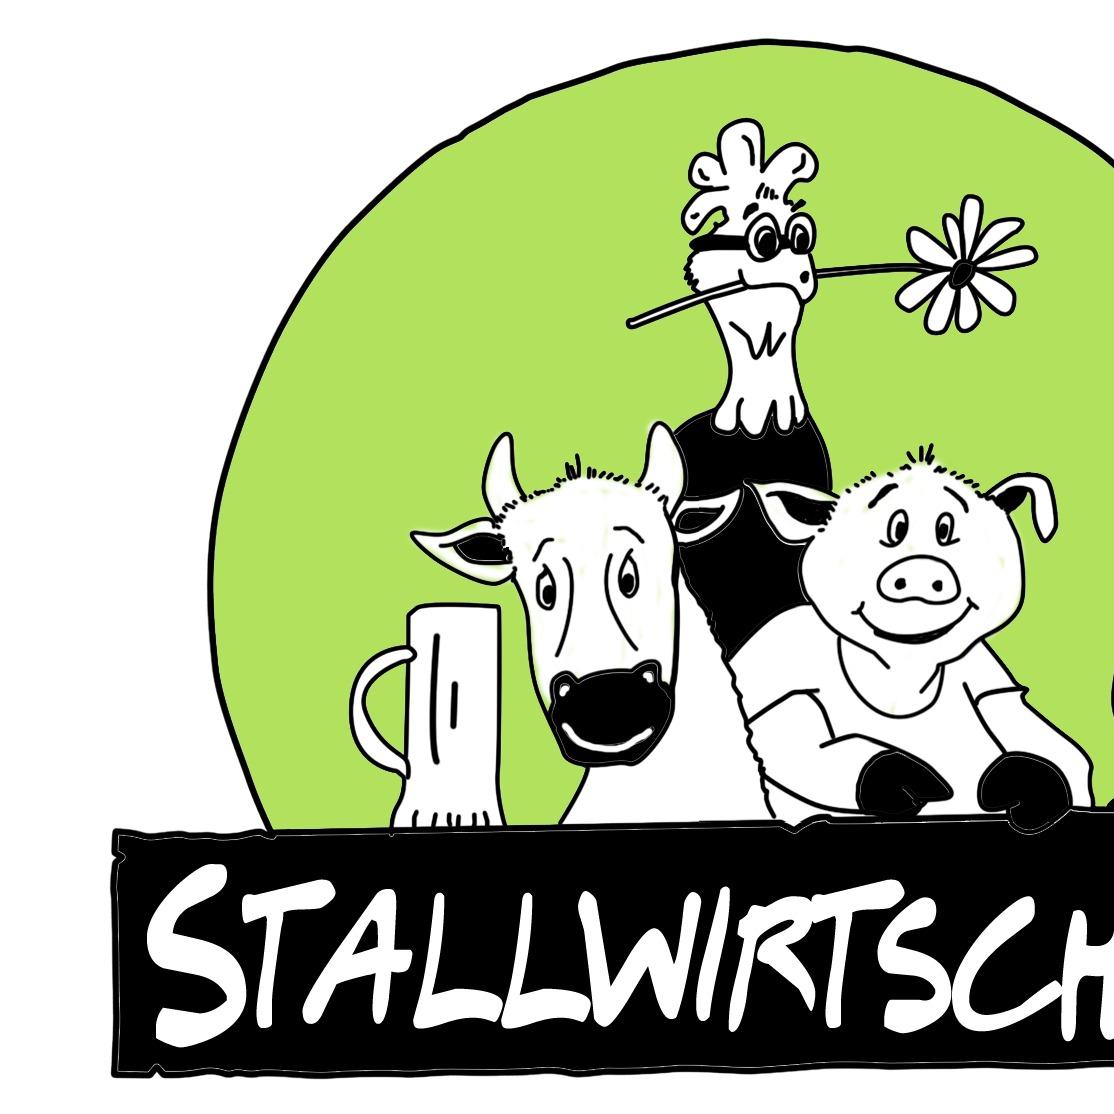 Restaurant "Stallwirtschaft" in Ergersheim